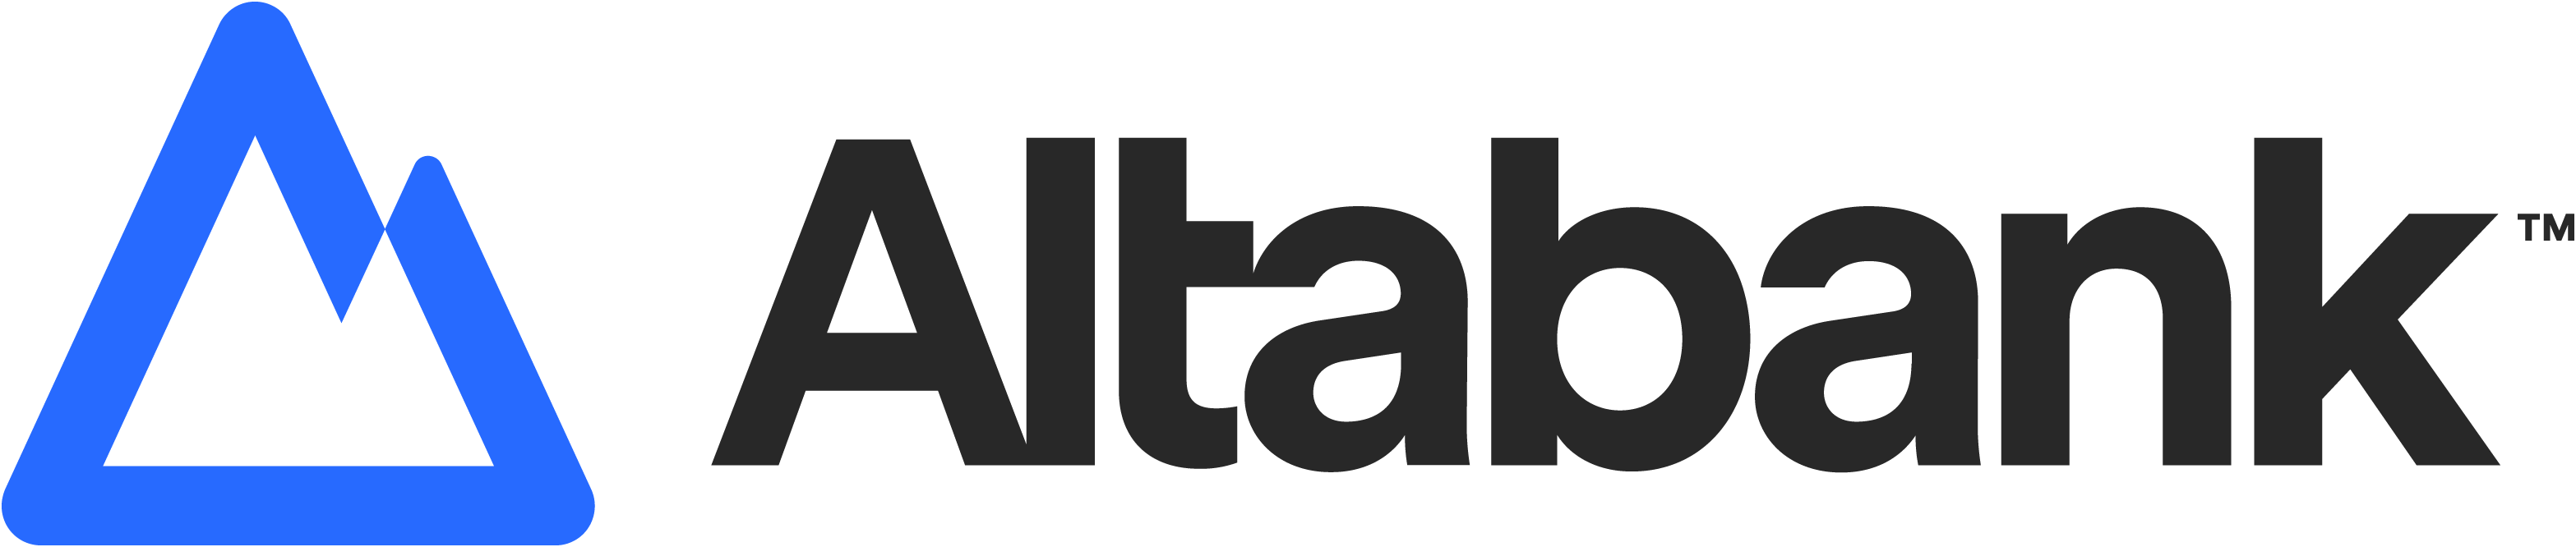 Altabank - Jumbo Loans